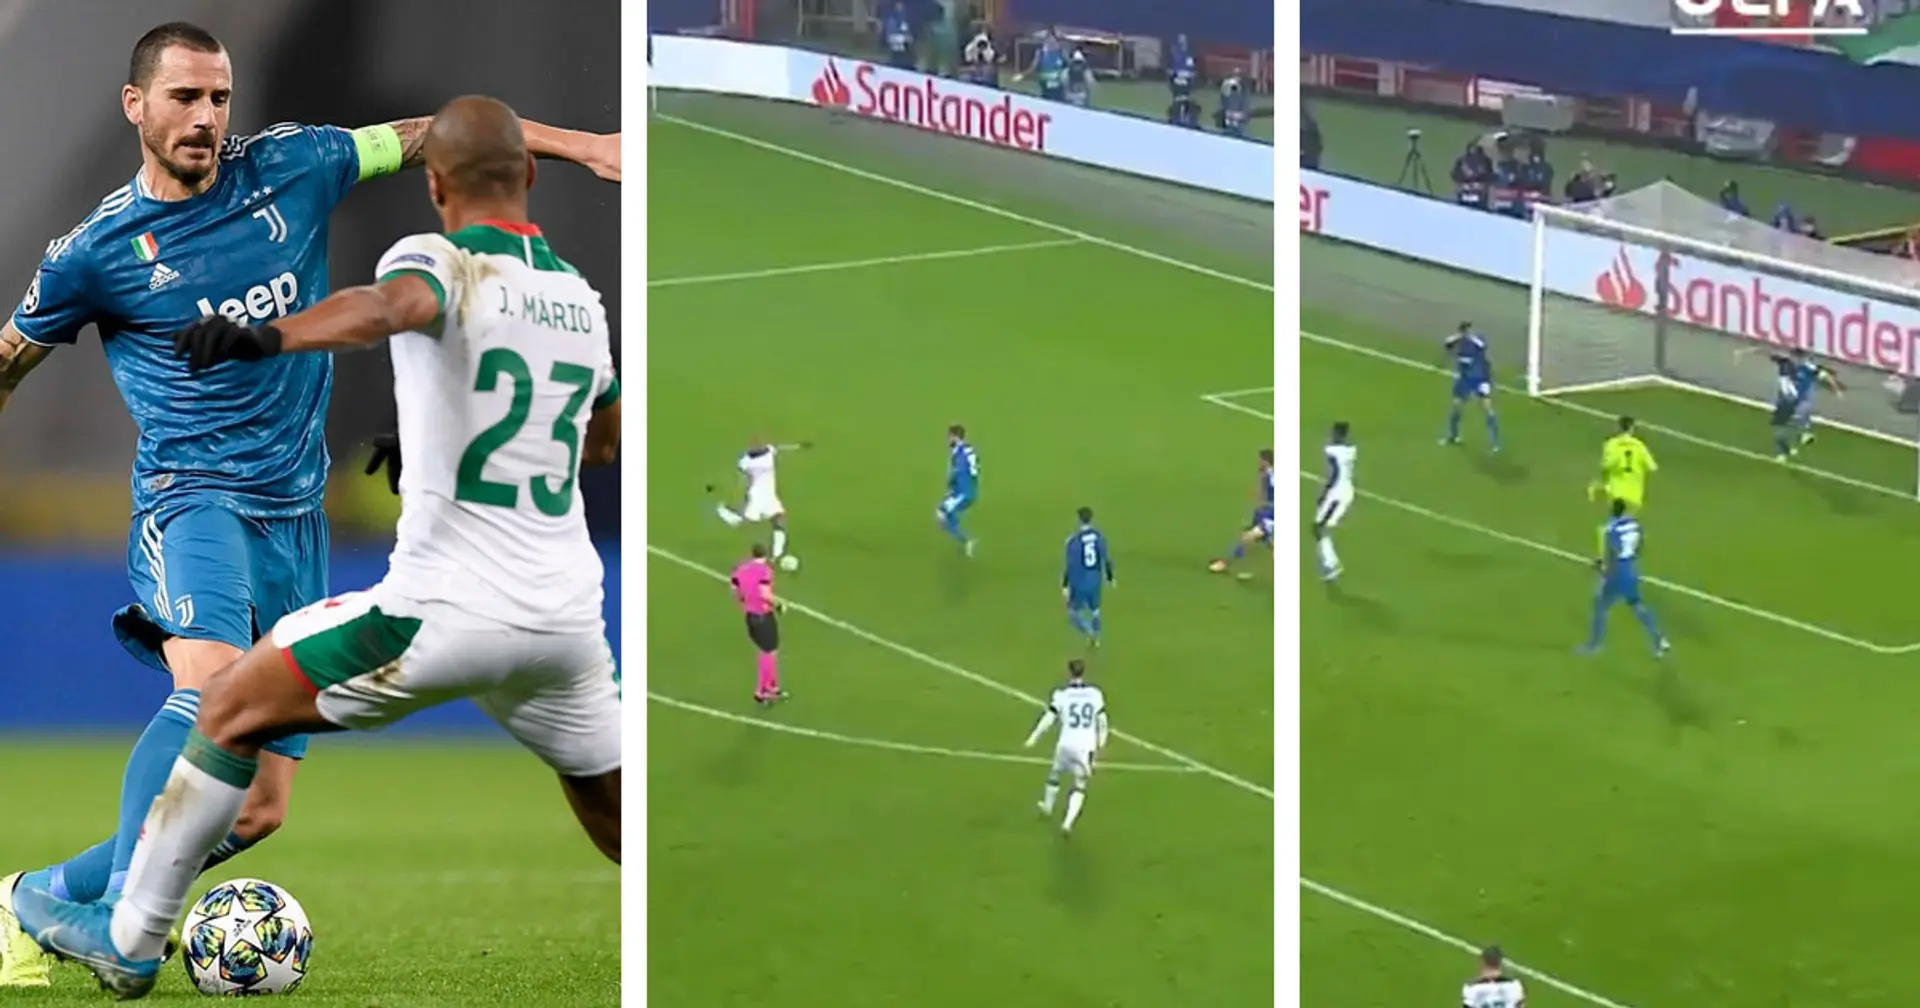 "Quando un salvataggio vale un gol": la UEFA ricorda il grande intervento difensivo di Bonucci in Champions!